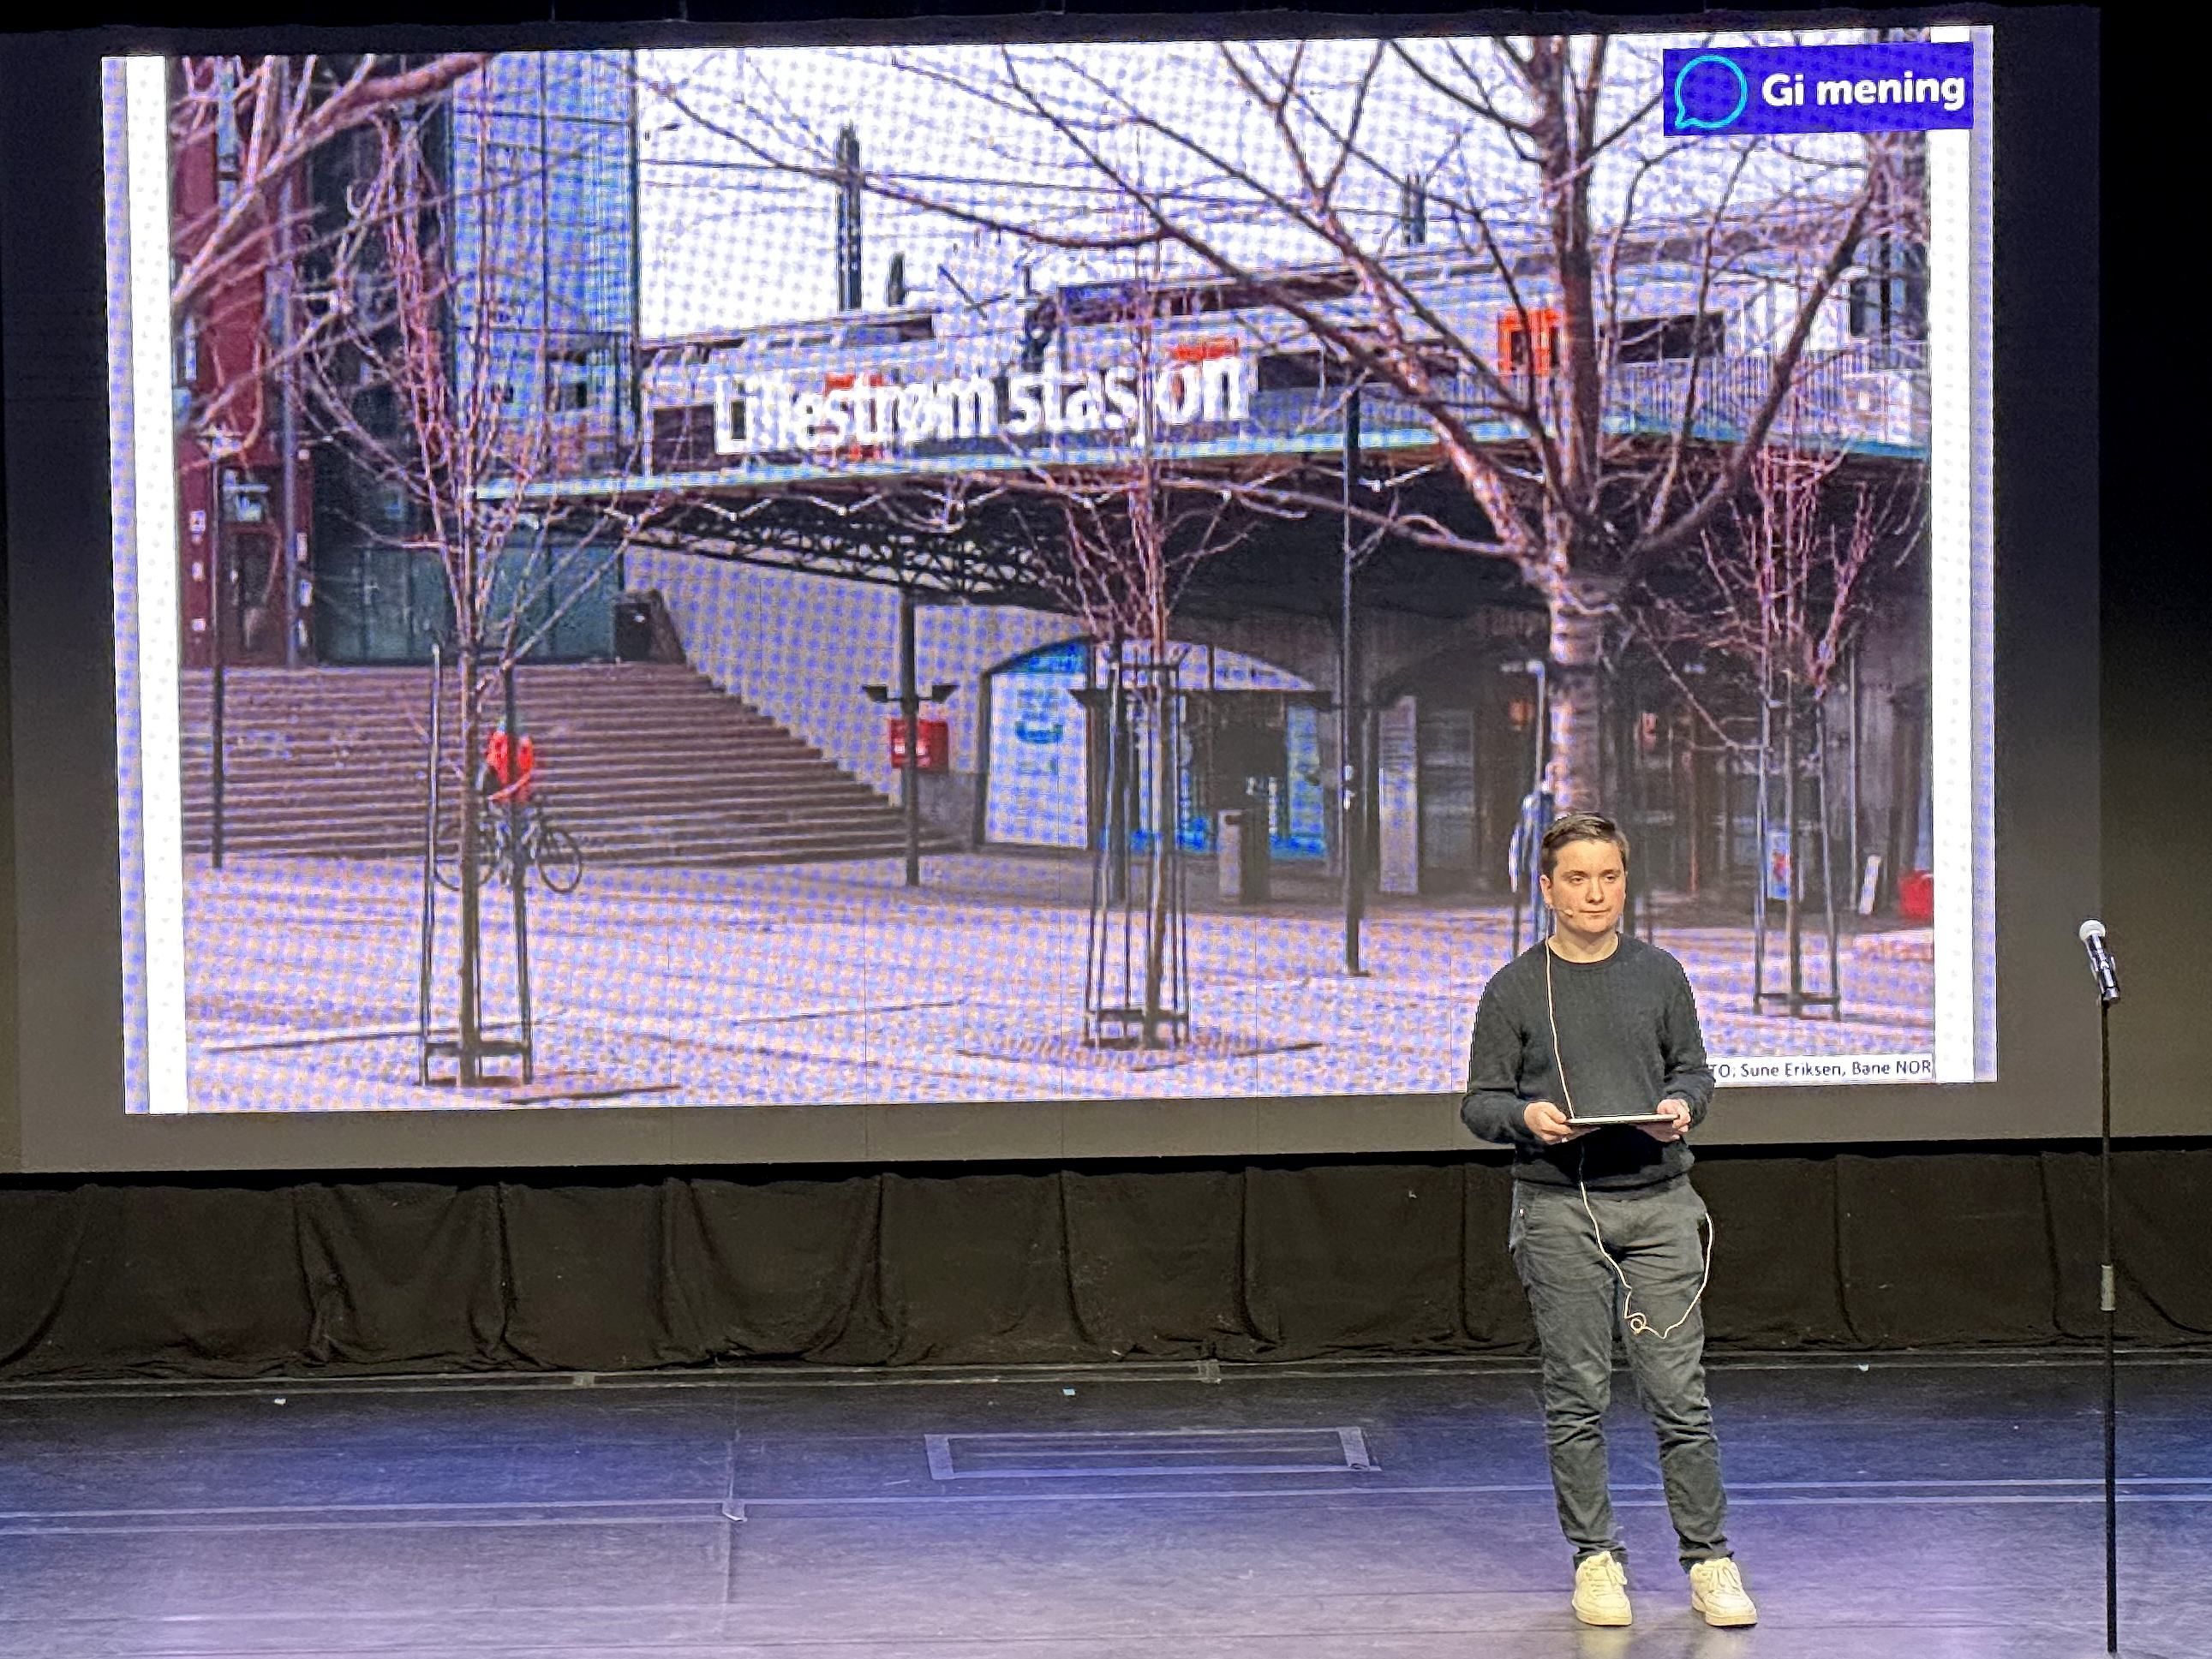 Bildet viser en ungdom på en scene. Bak ham er det et lerret, som viser bilde av Lillestrøm stasjon. 